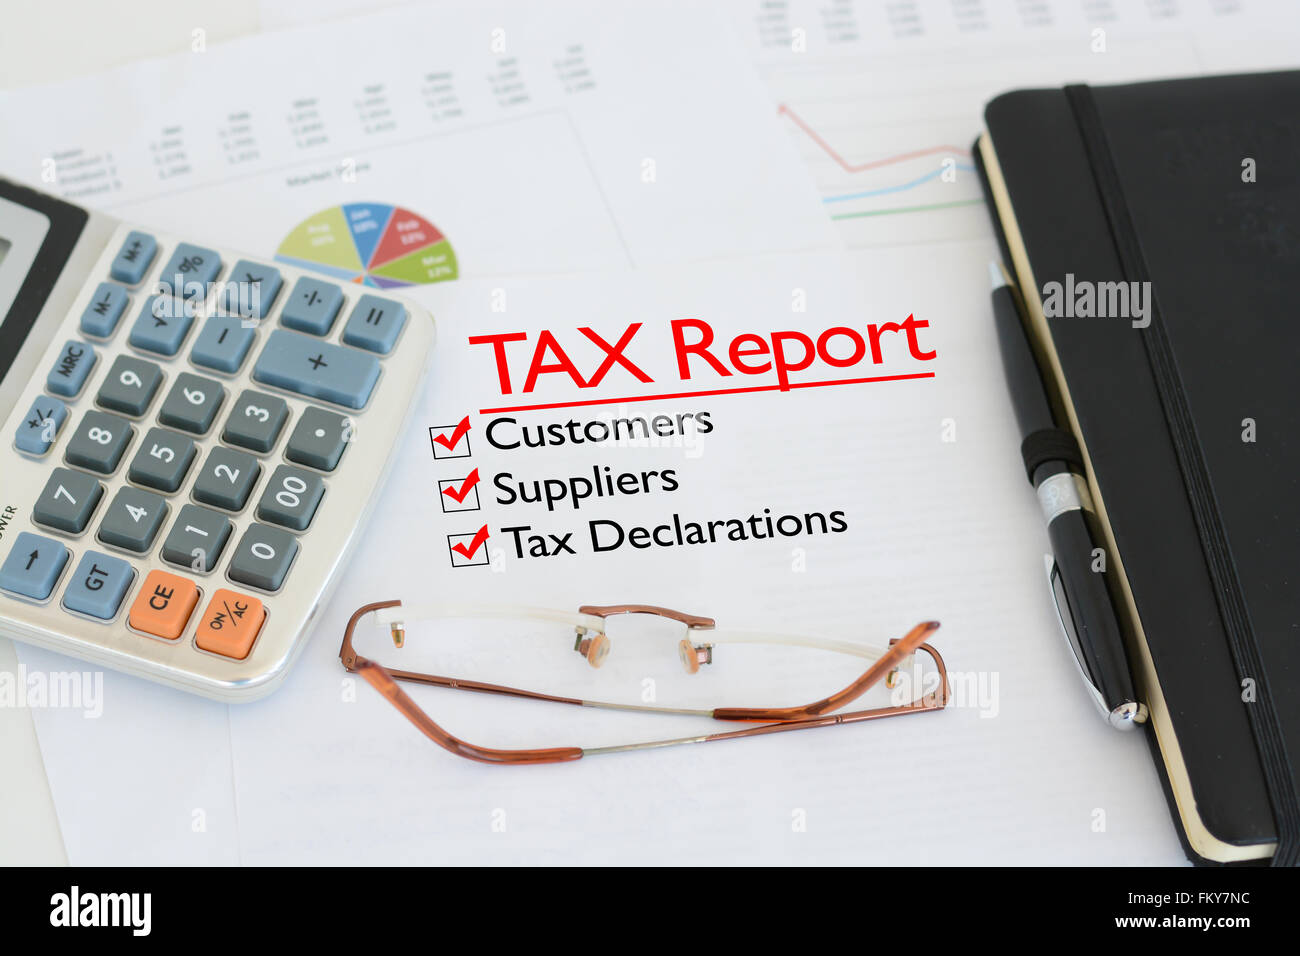 Rapport d'impôt sur un bureau avec des mesures contre les clients, les fournisseurs et les déclarations fiscales Banque D'Images